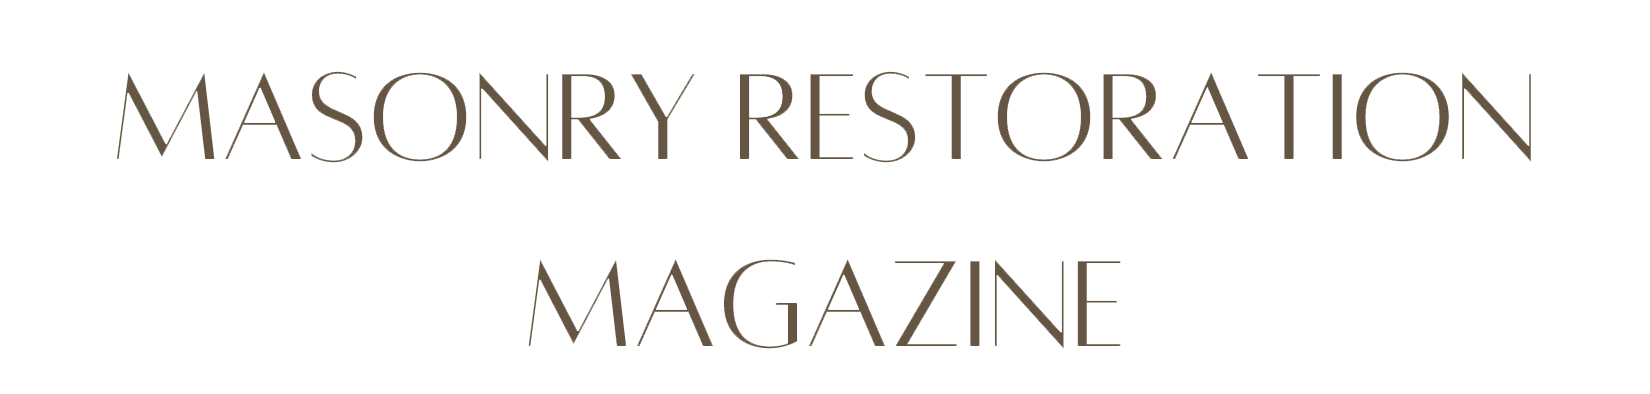 Masonry Restoration Magazine